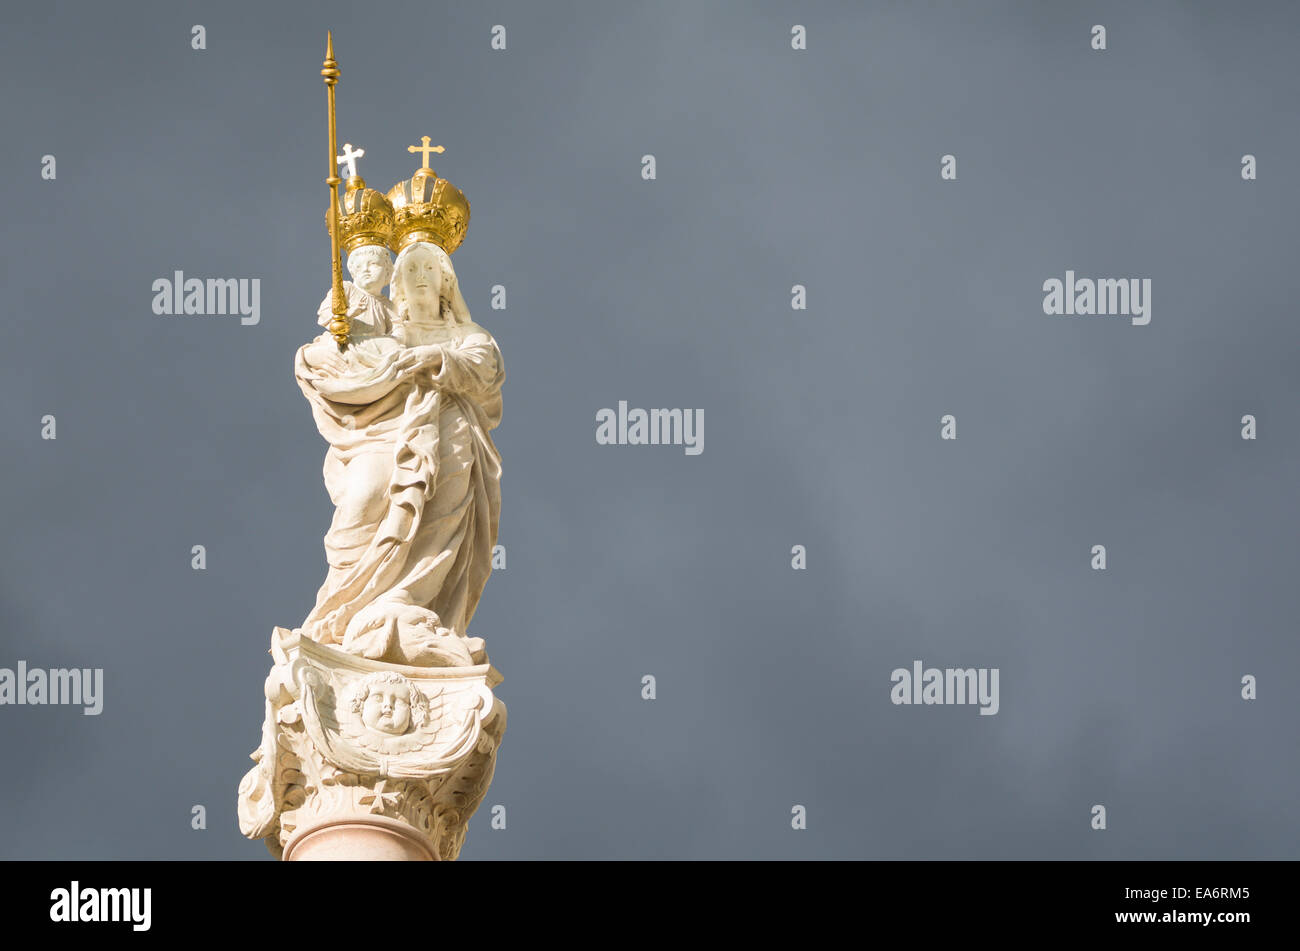 La statua della Vergine Maria e il Bambino Gesù con corone d'oro in orizzontale Foto Stock